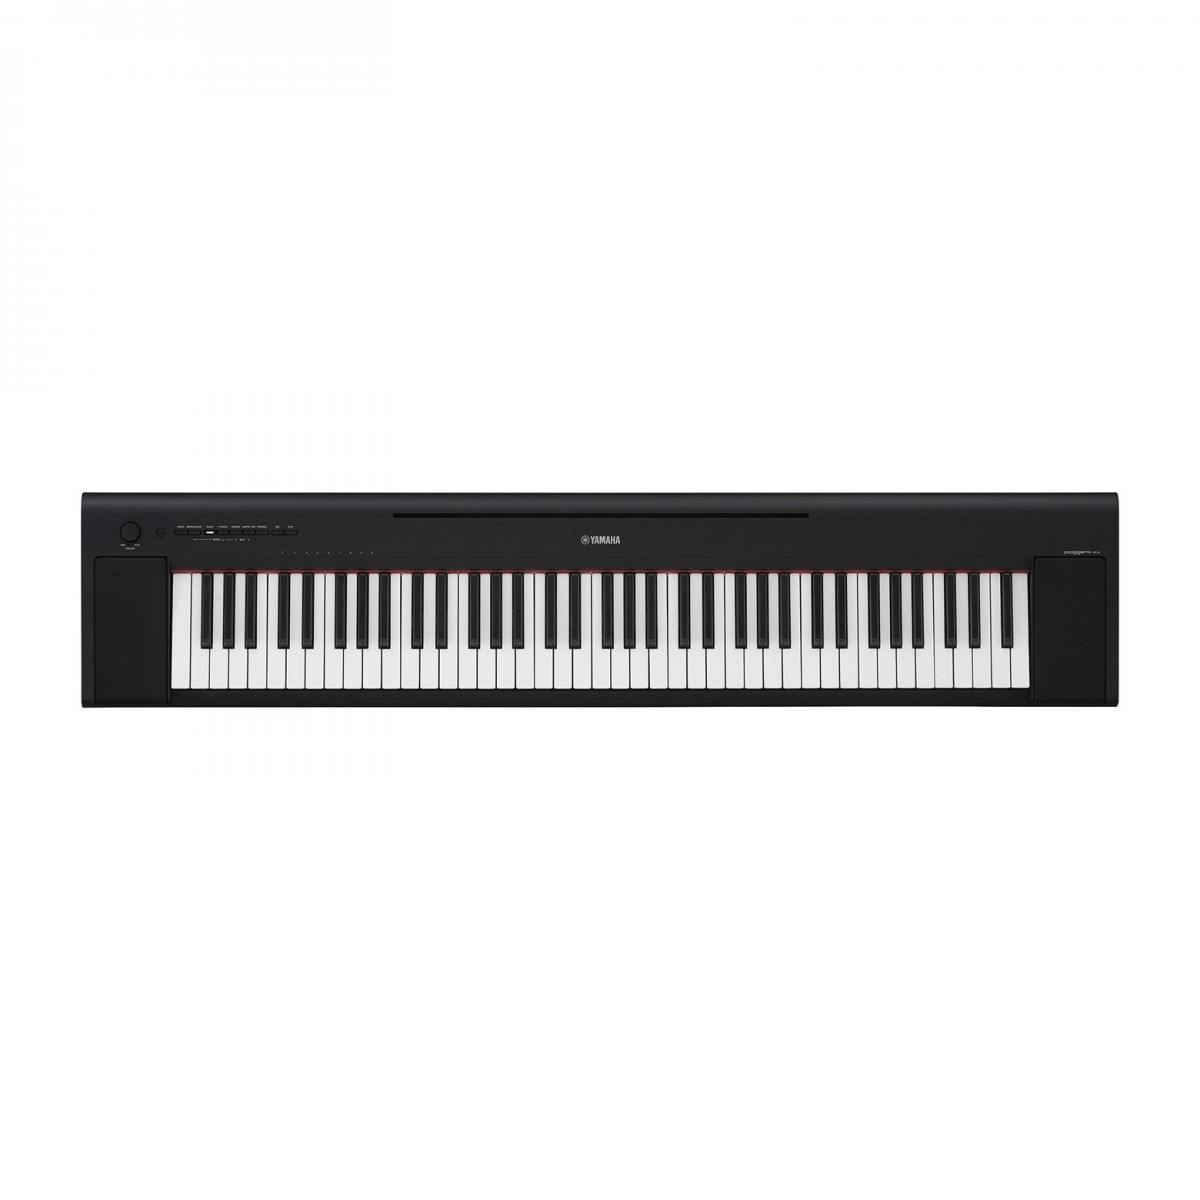 Цифровое пианино Yamaha NP-35 B Piaggero